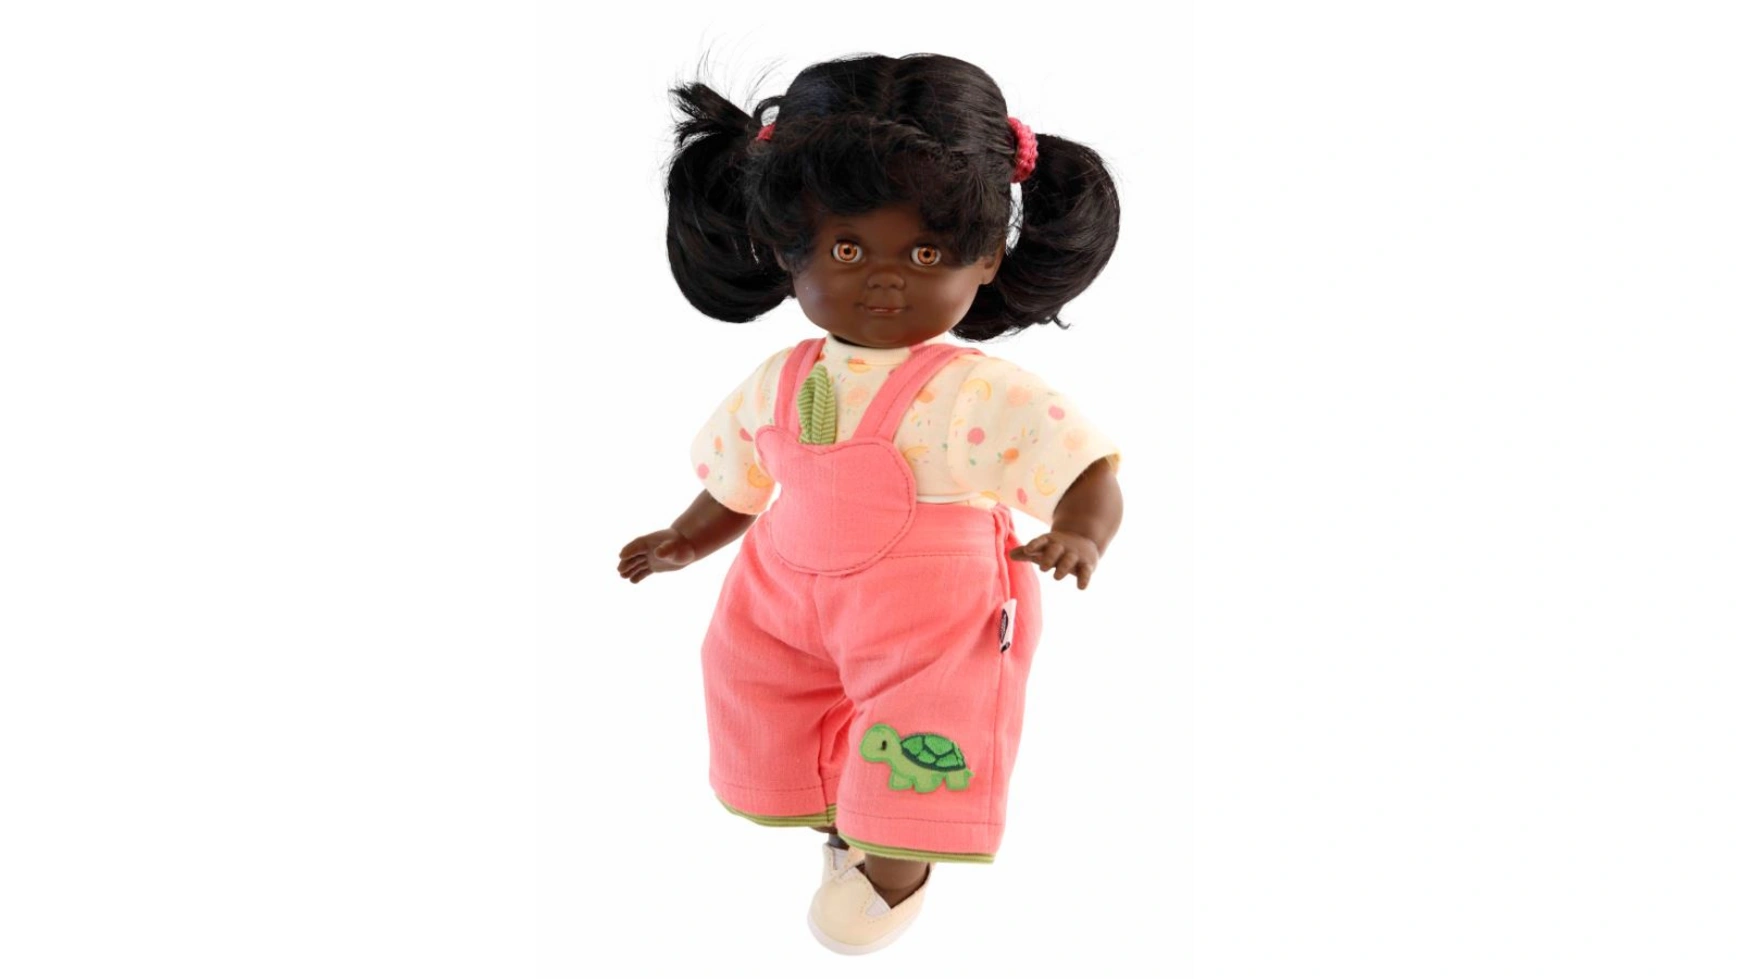 Schildkroet-Puppen Размер Куклы Шлюммерле 32 черные волосы, карие сонные глаза, одежда розового/желтого/зеленого цвета